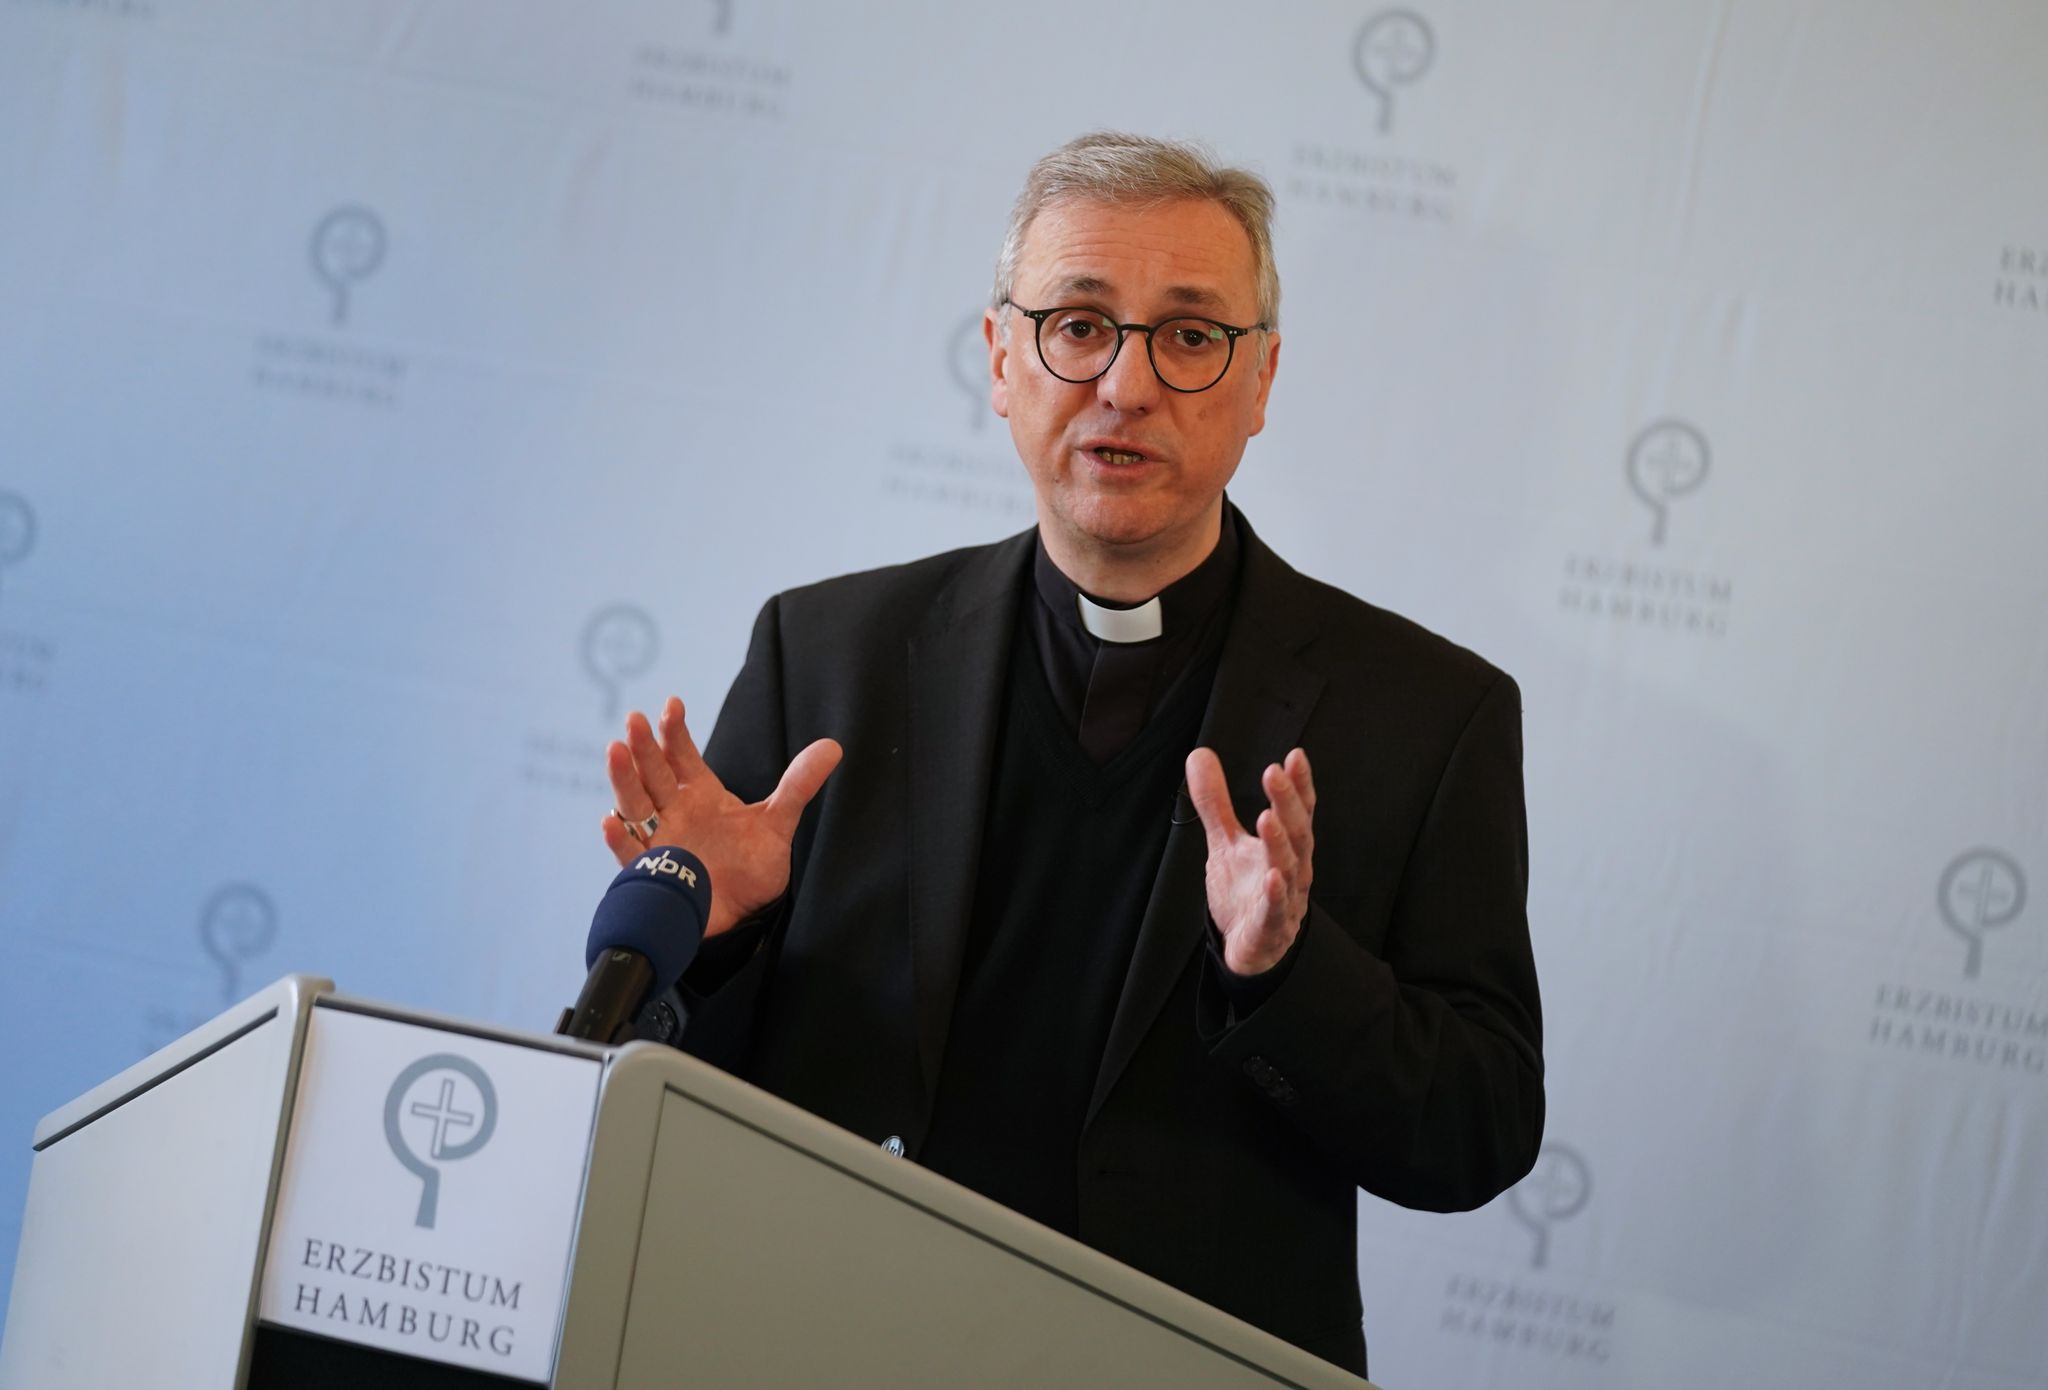 kirche kritisiert drittstaaten-regelung als «grotesk»